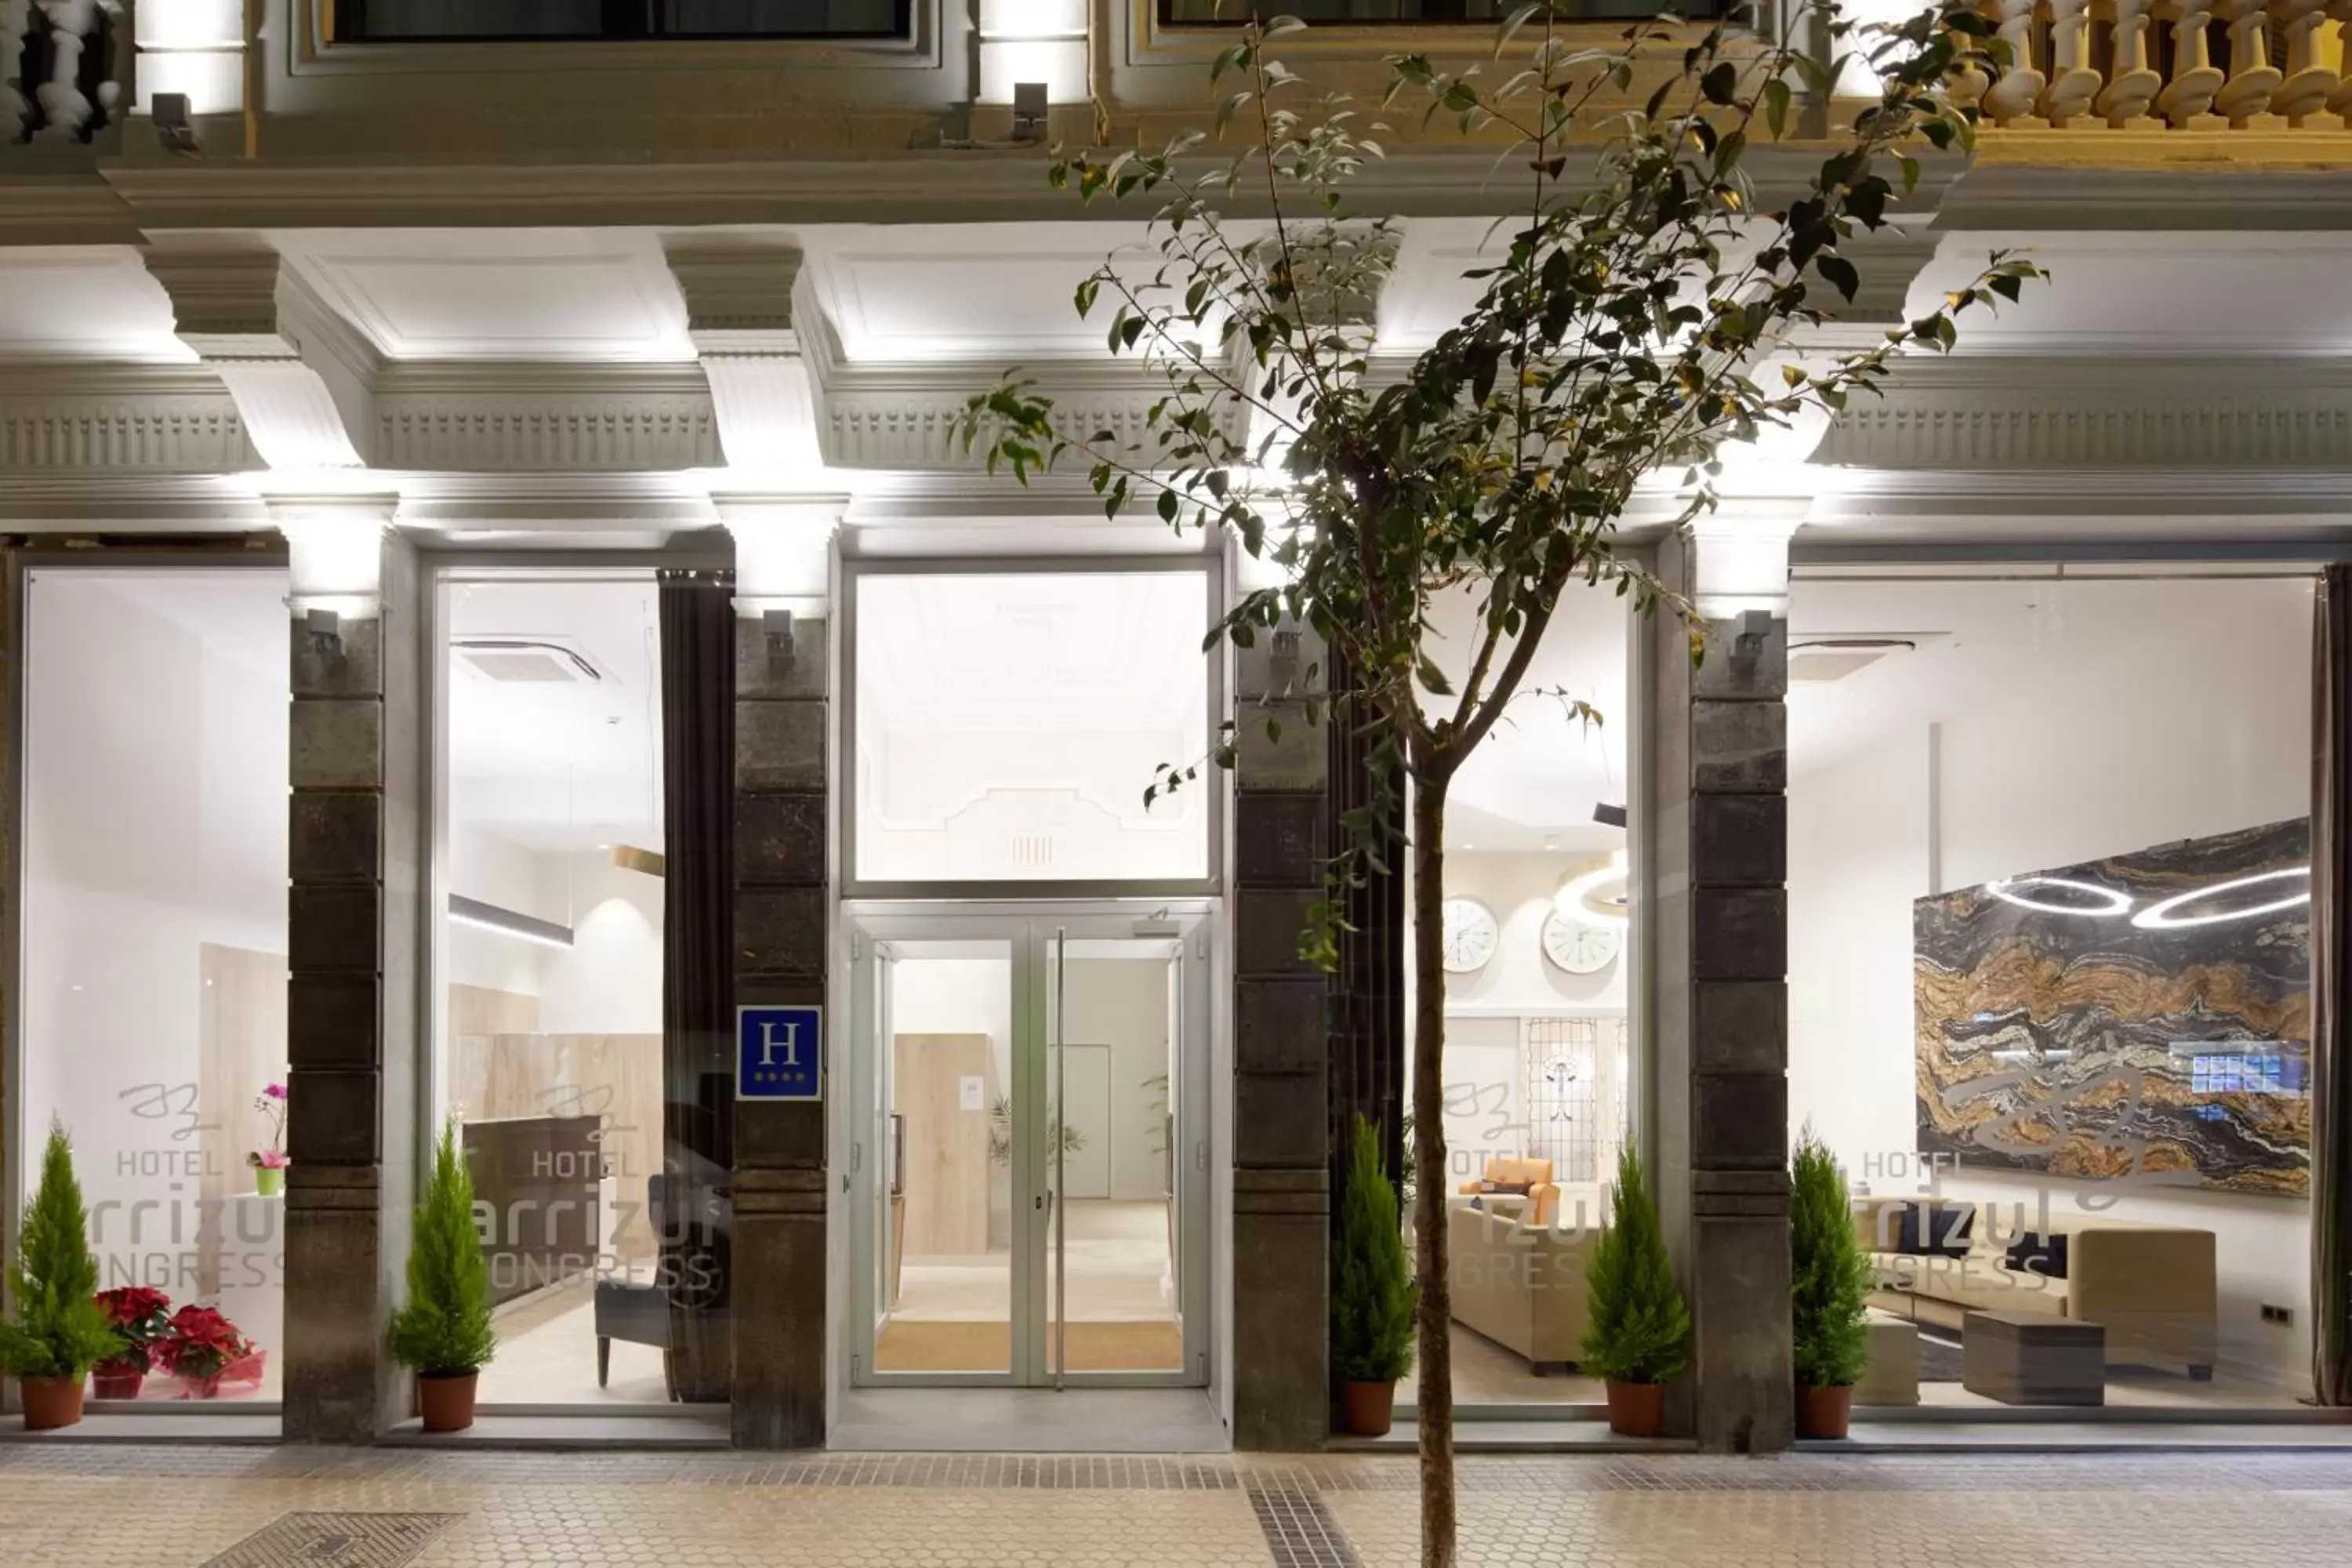 Facade/entrance in Hotel Arrizul Congress